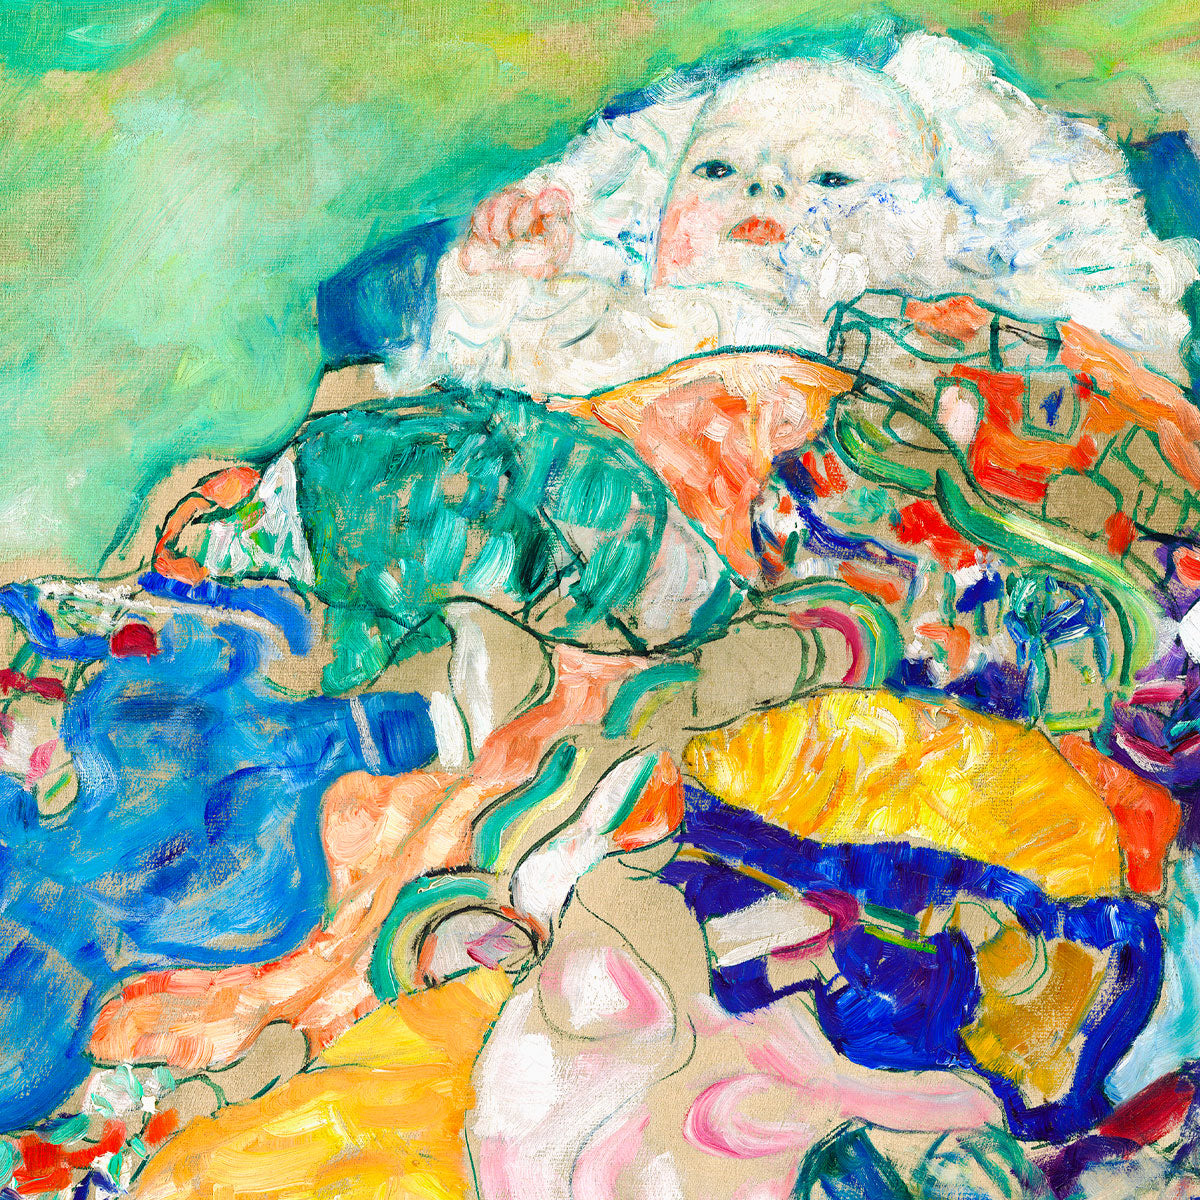 Baby (Cradle) by Gustav Klimt